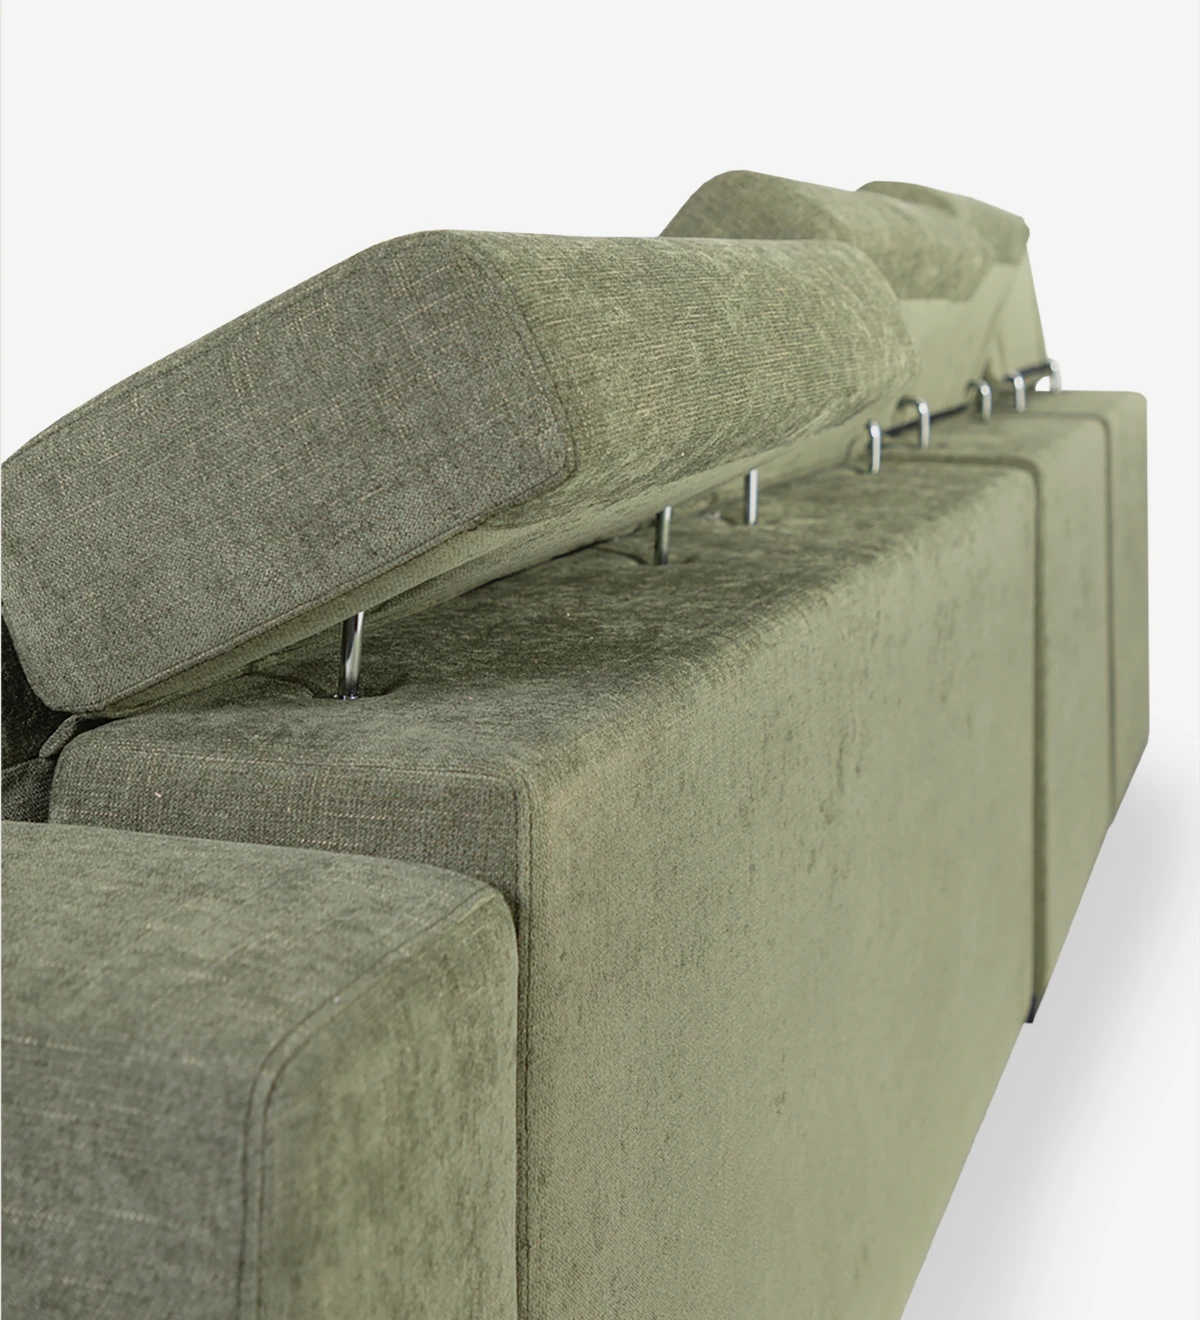 Sofá de 3 lugares com chaise longue reversível, estofado a tecido, com apoios de cabeça reclináveis, assentos deslizantes e arrumação na chaise longue